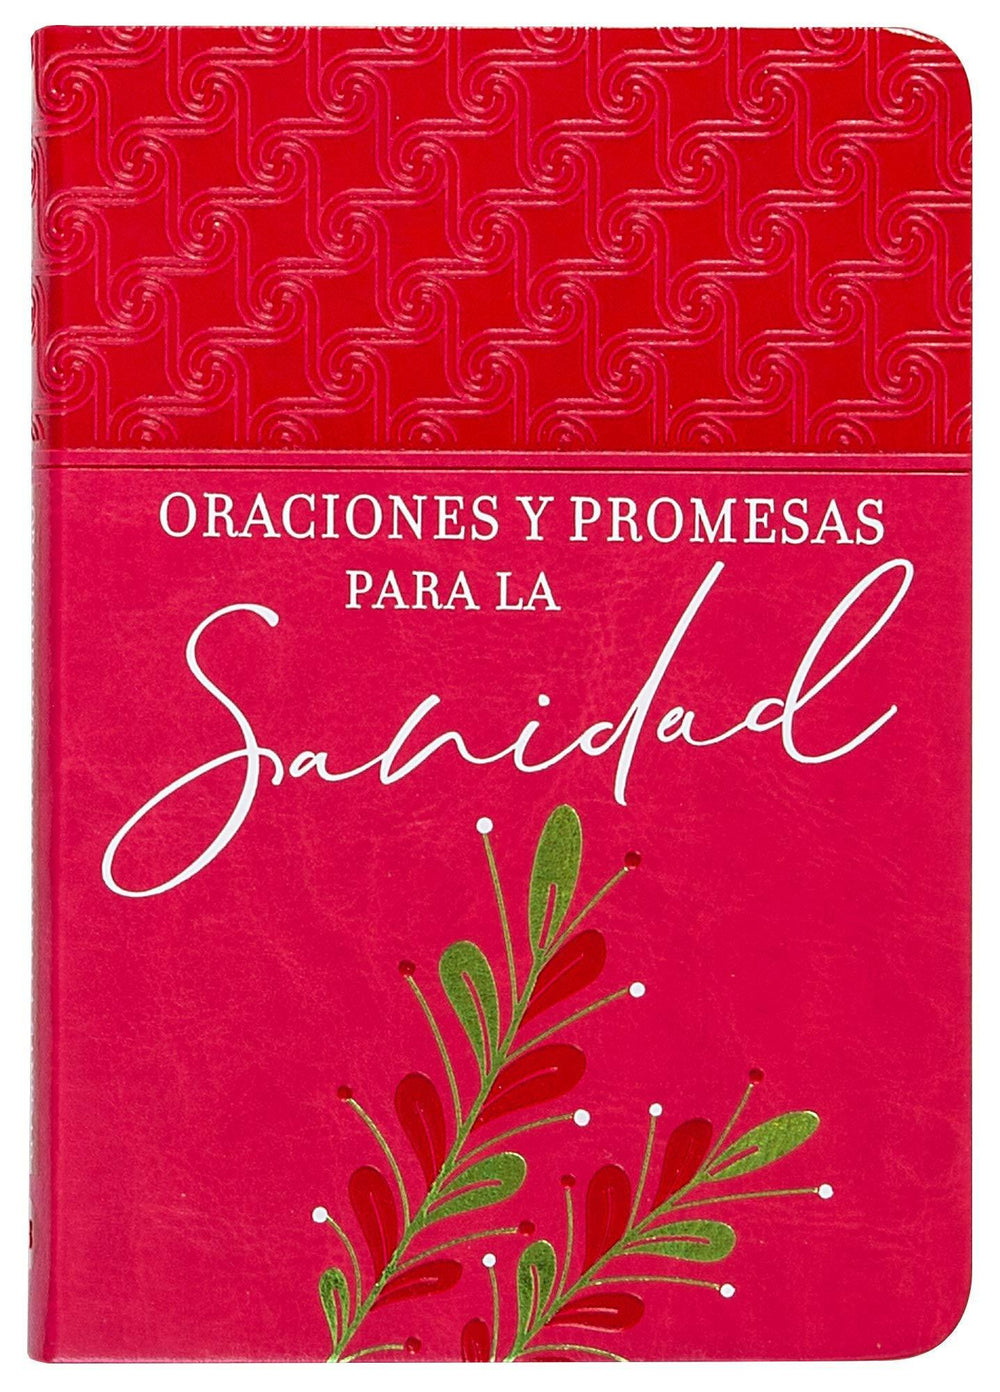 Oraciones y promesas para la sanidad - Pura Vida Books